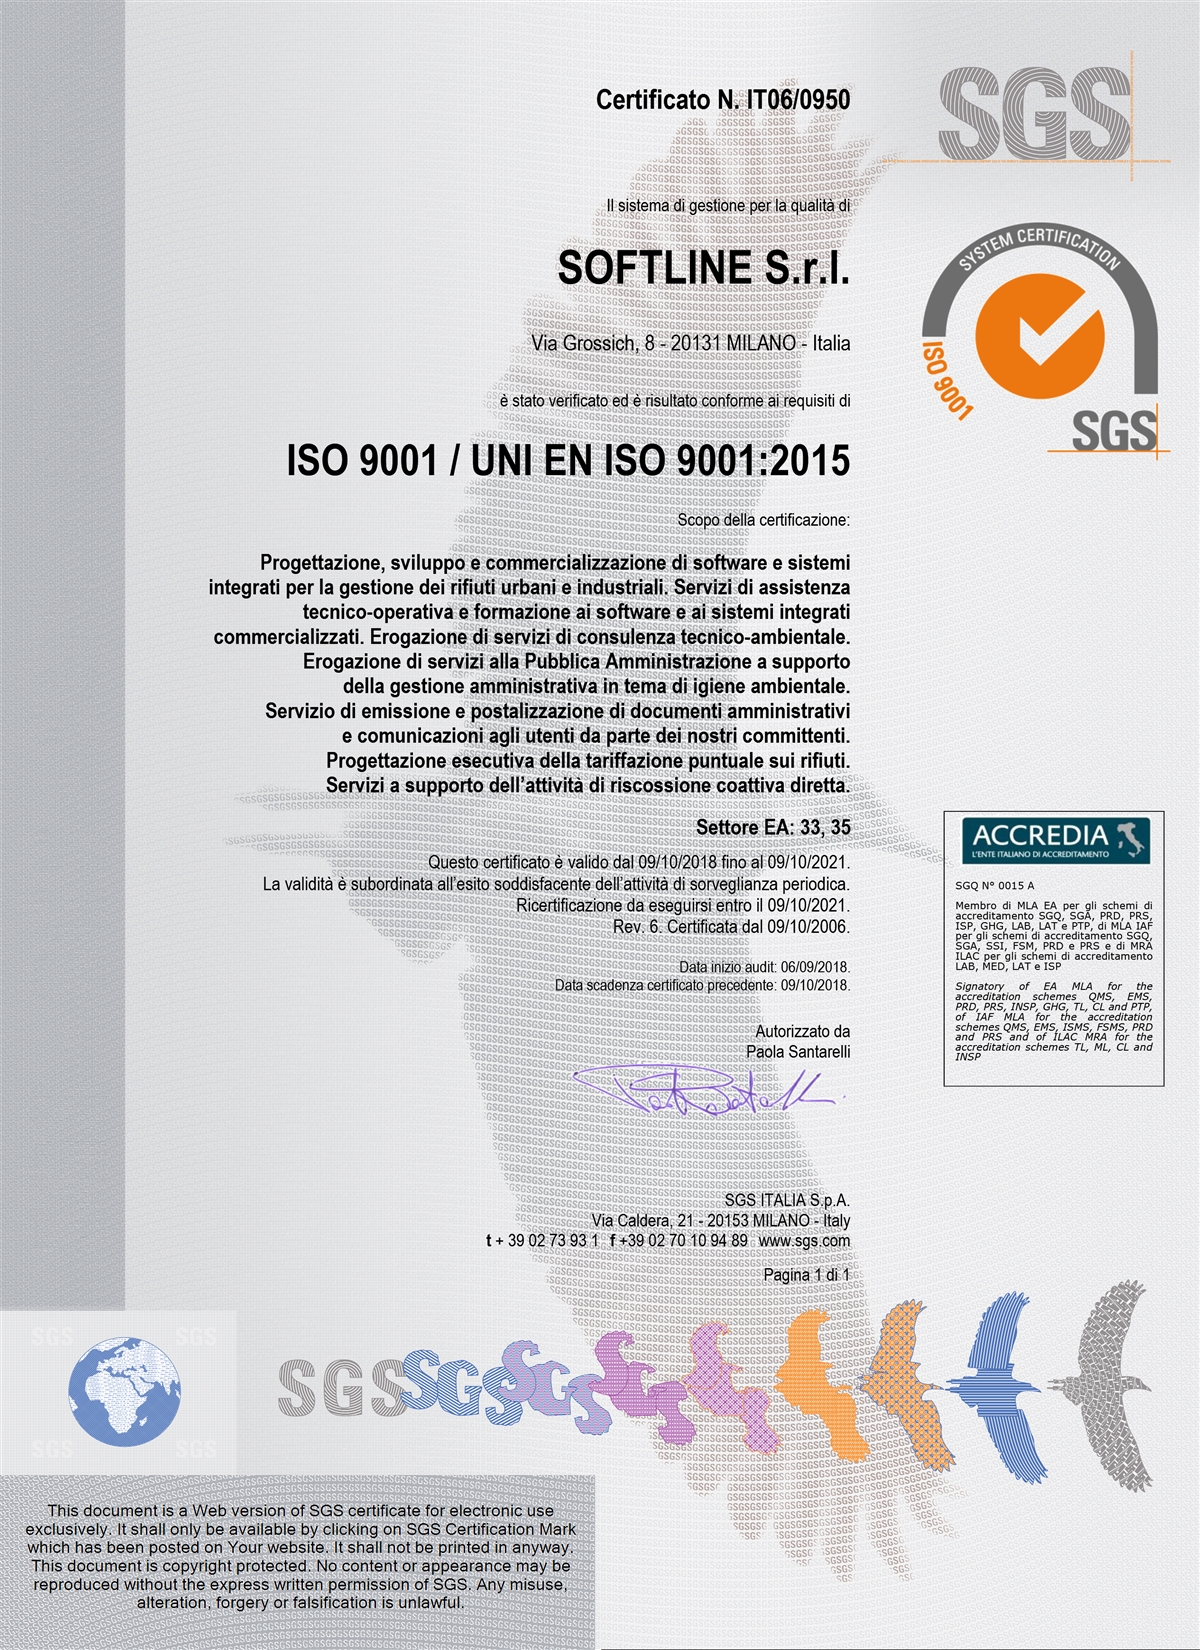 SOFLINE  SGS Brasil